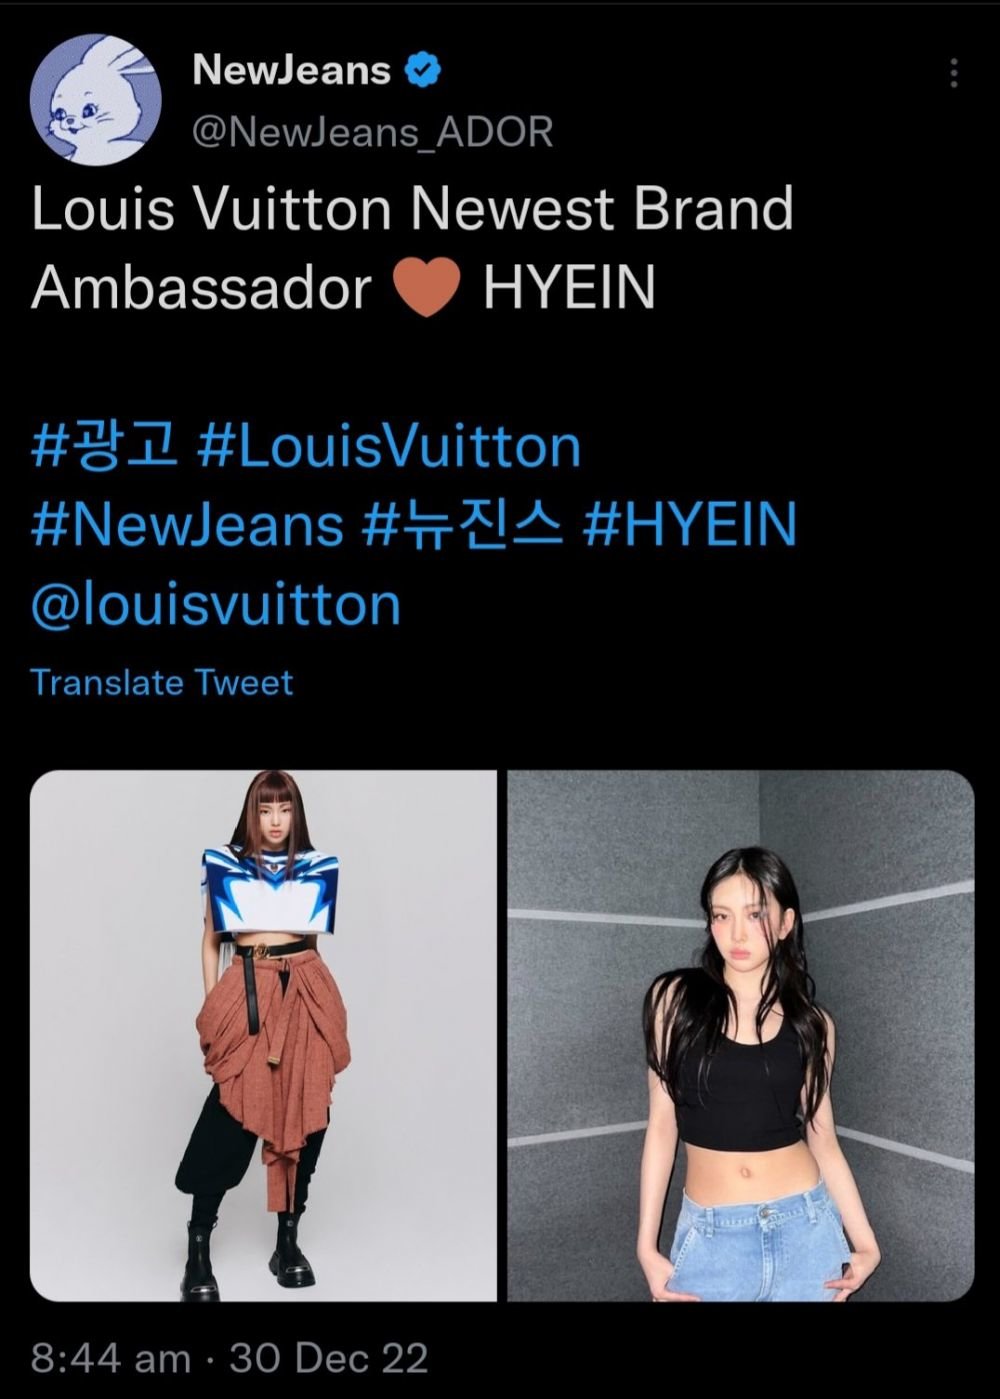 louis vuitton ambassador hyein